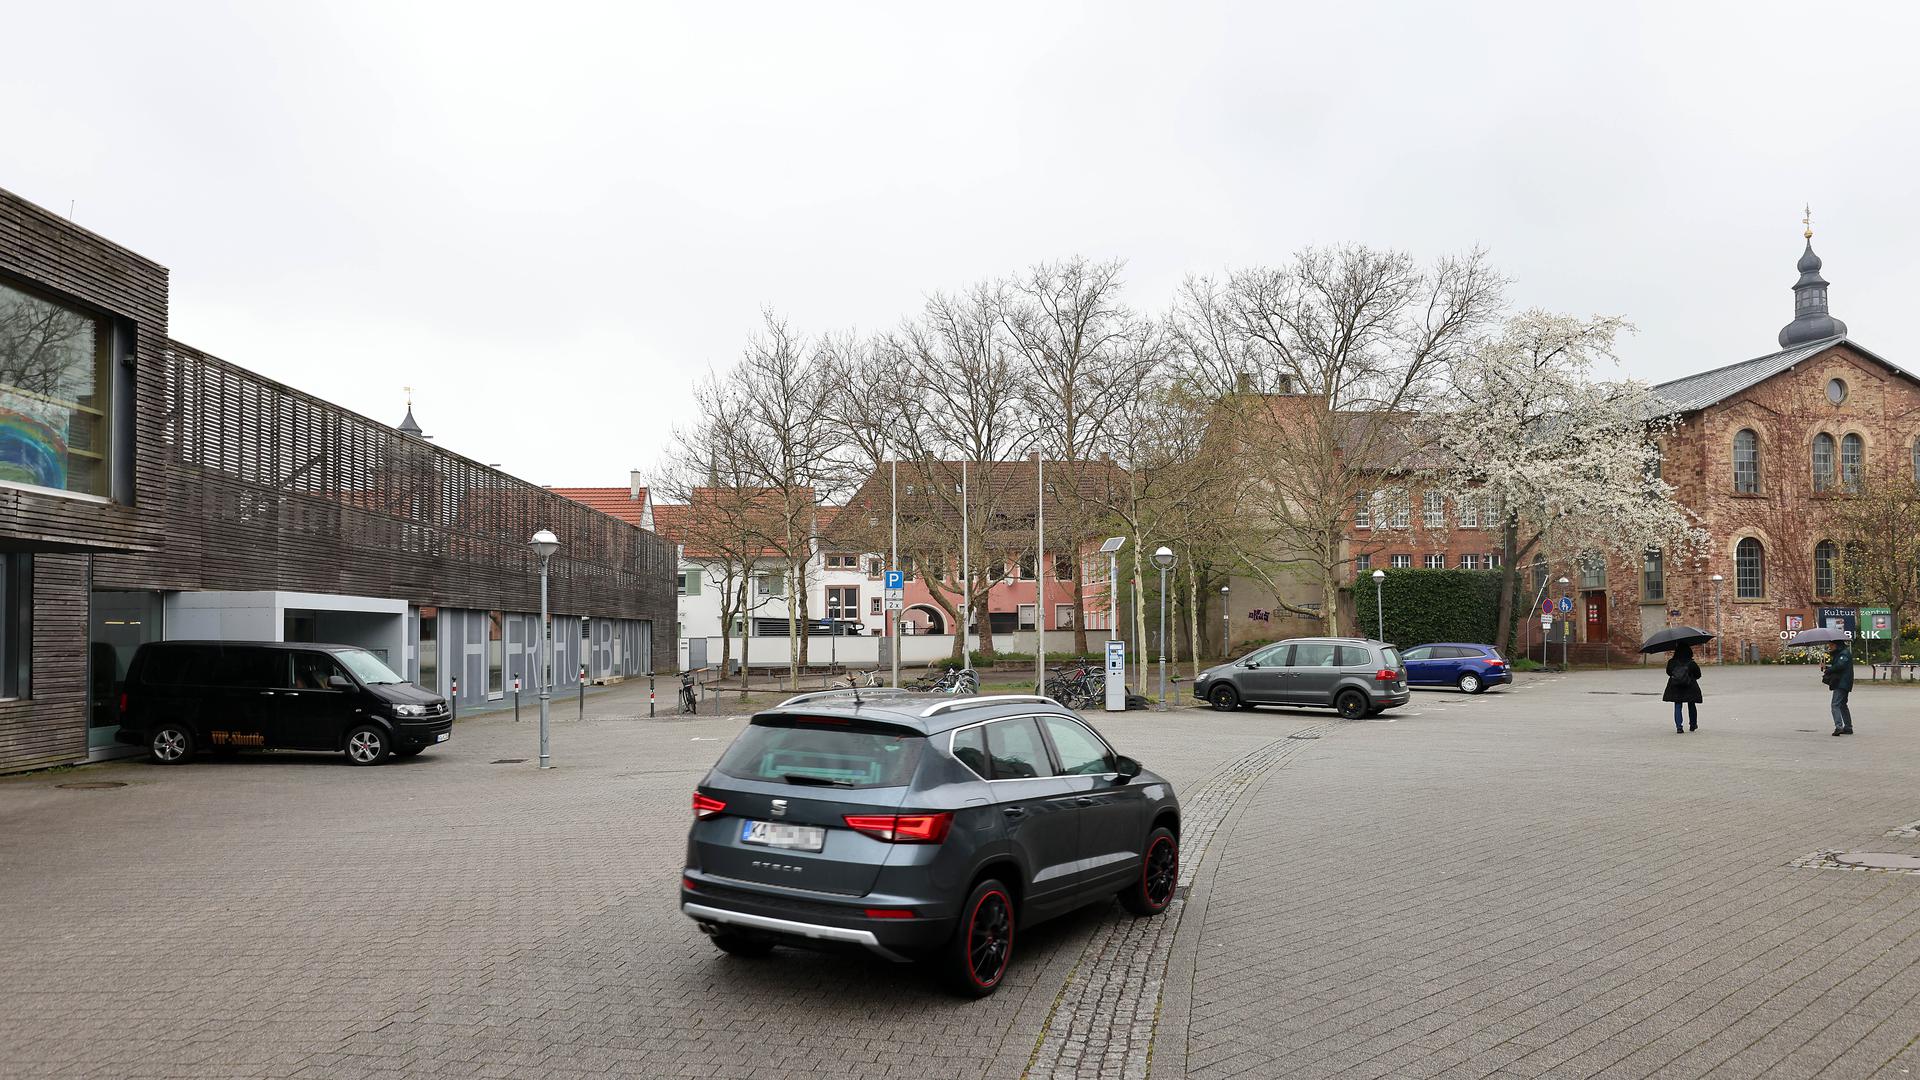 Am 1. April 2022 sind im Weiherhof in Durlach einige Autos geparkt. Links vorne der Schülerhort, daran schließt sich das Weiherhofbad an. Rechts das Kulturzentrum Orgelfabrik mit dem Durchgang zum Altstadtring.